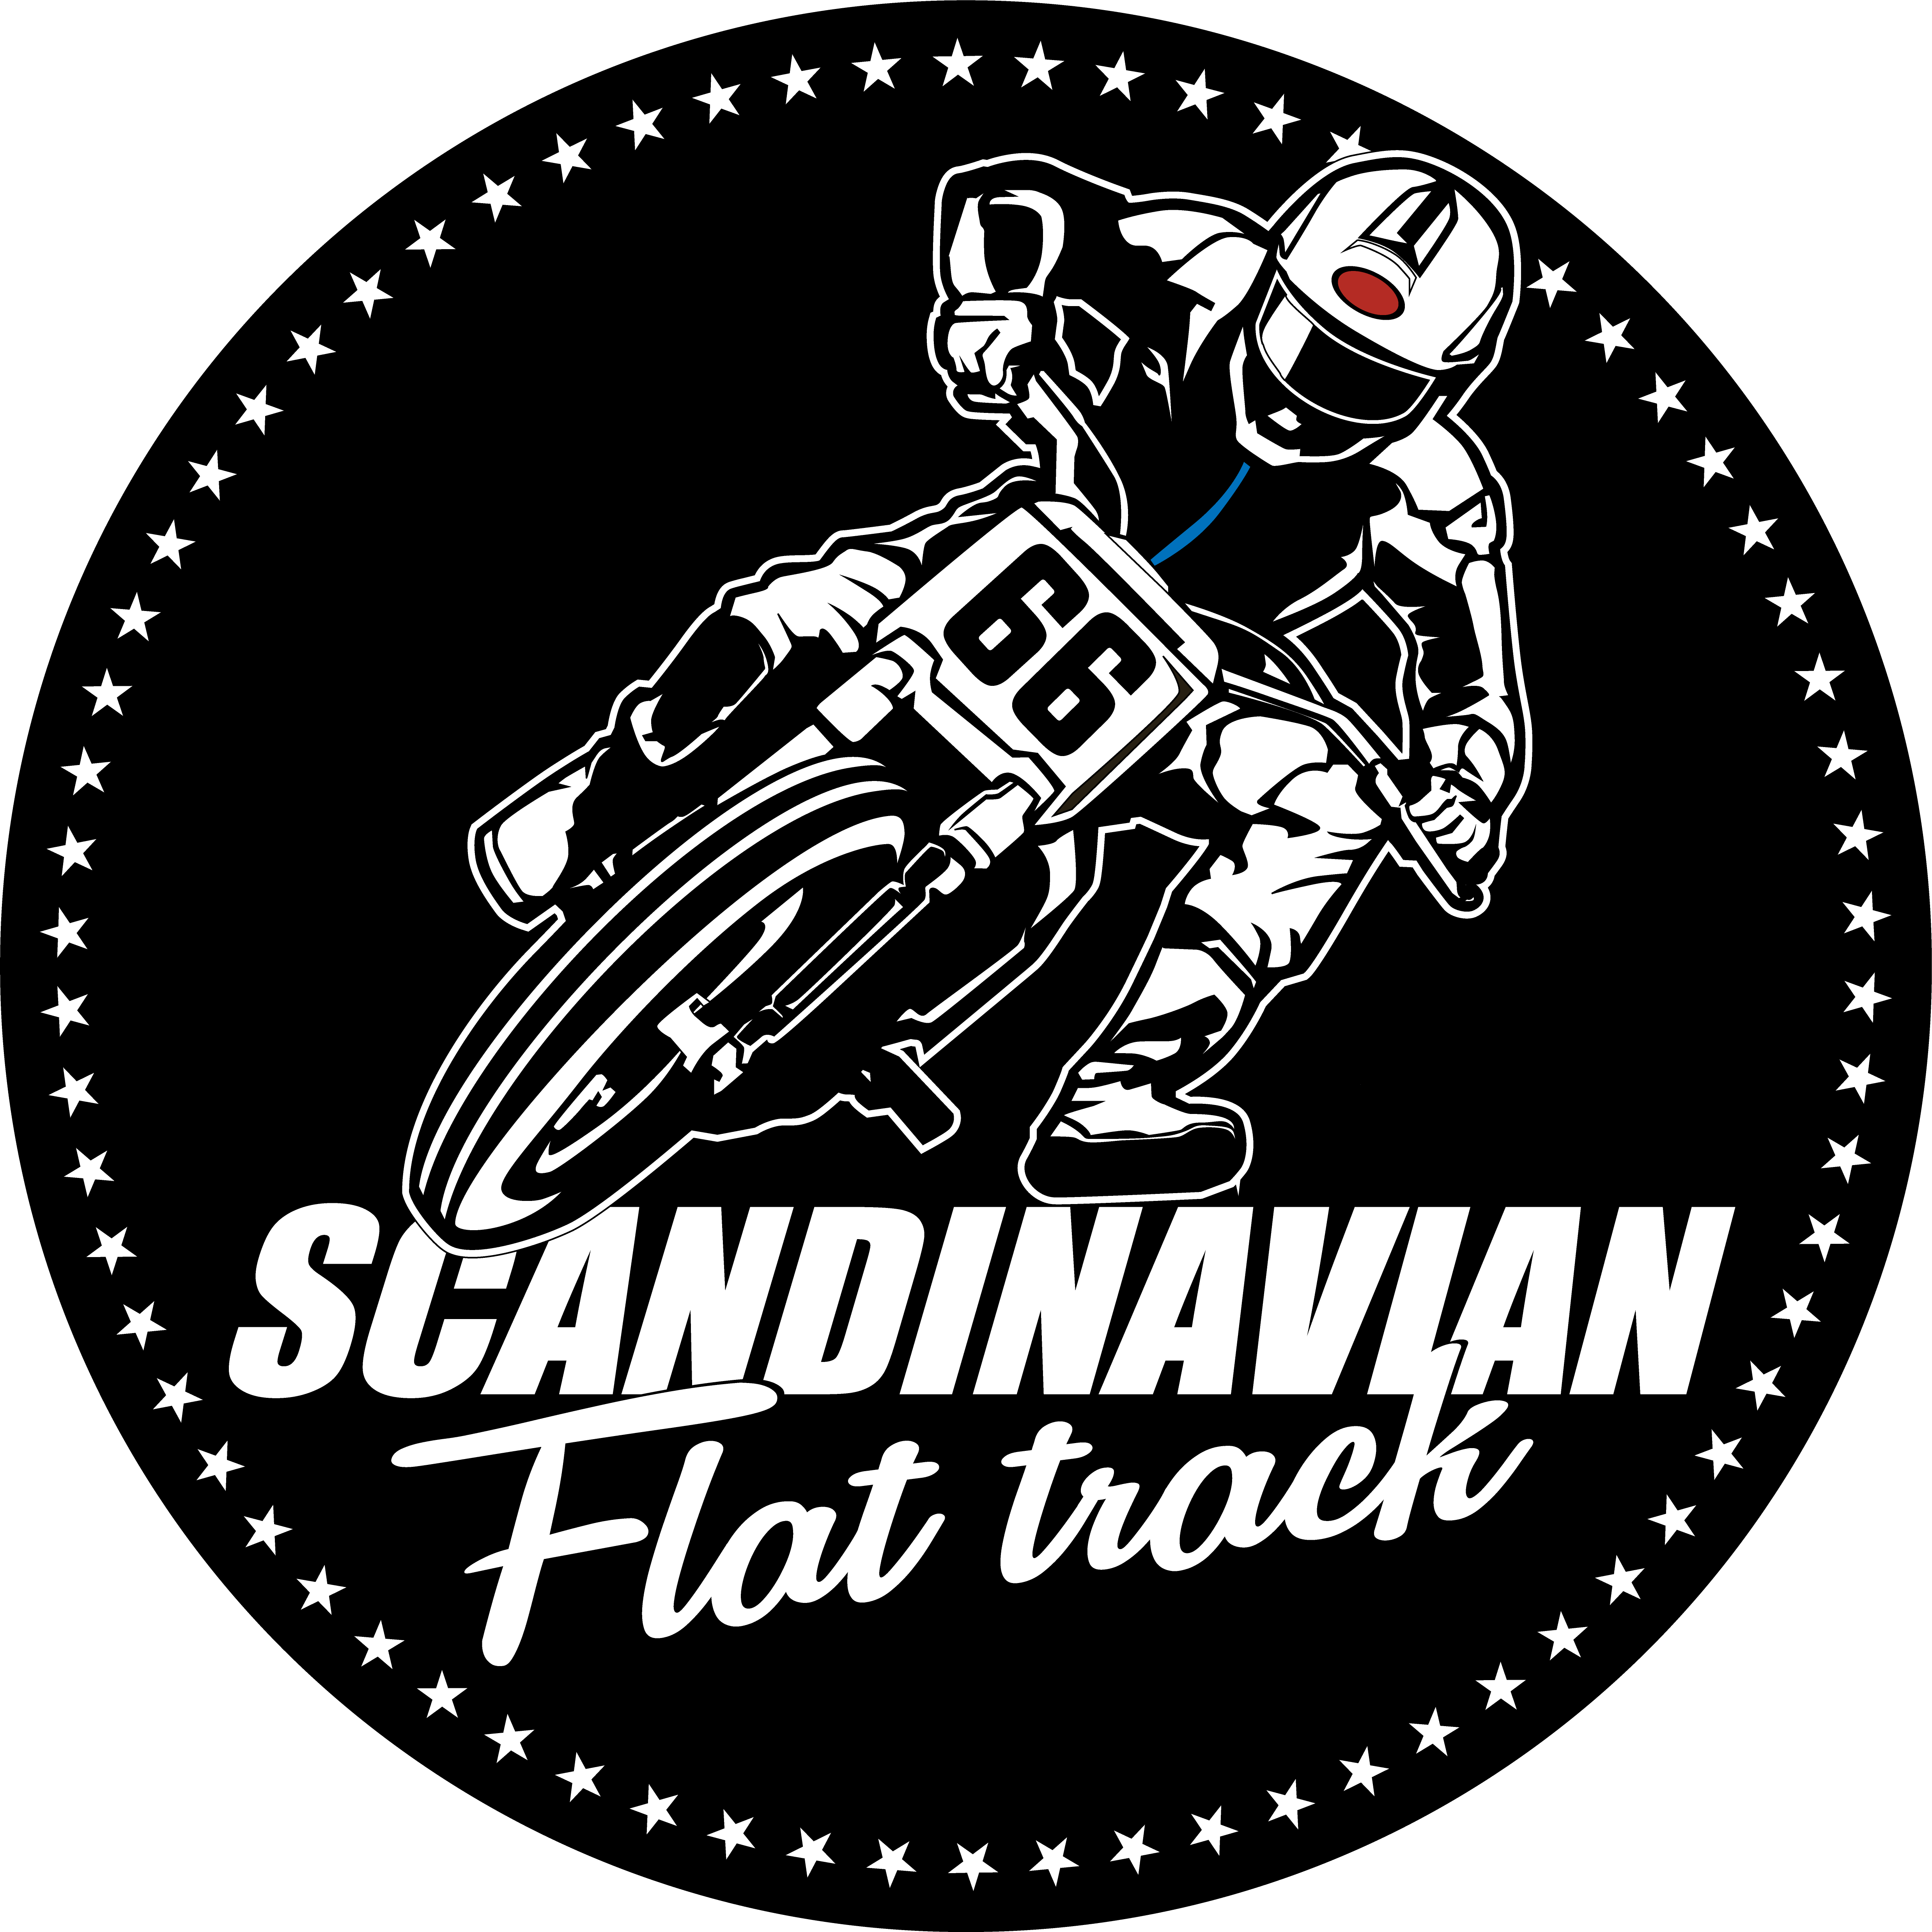 Scandinavian Flat Track